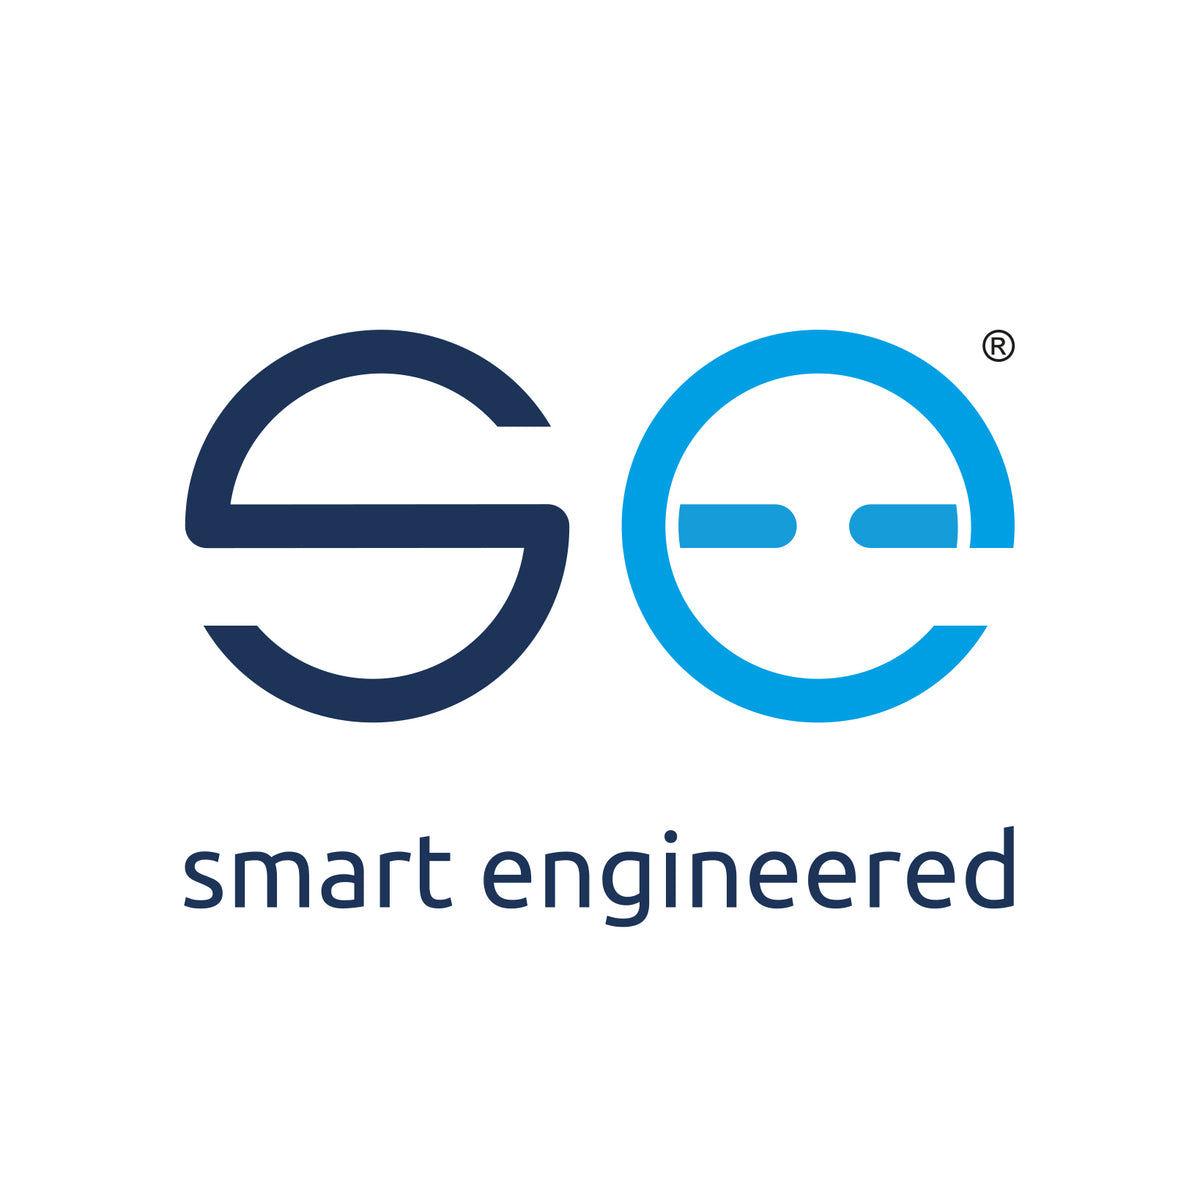 (c) Smart-engineered.com